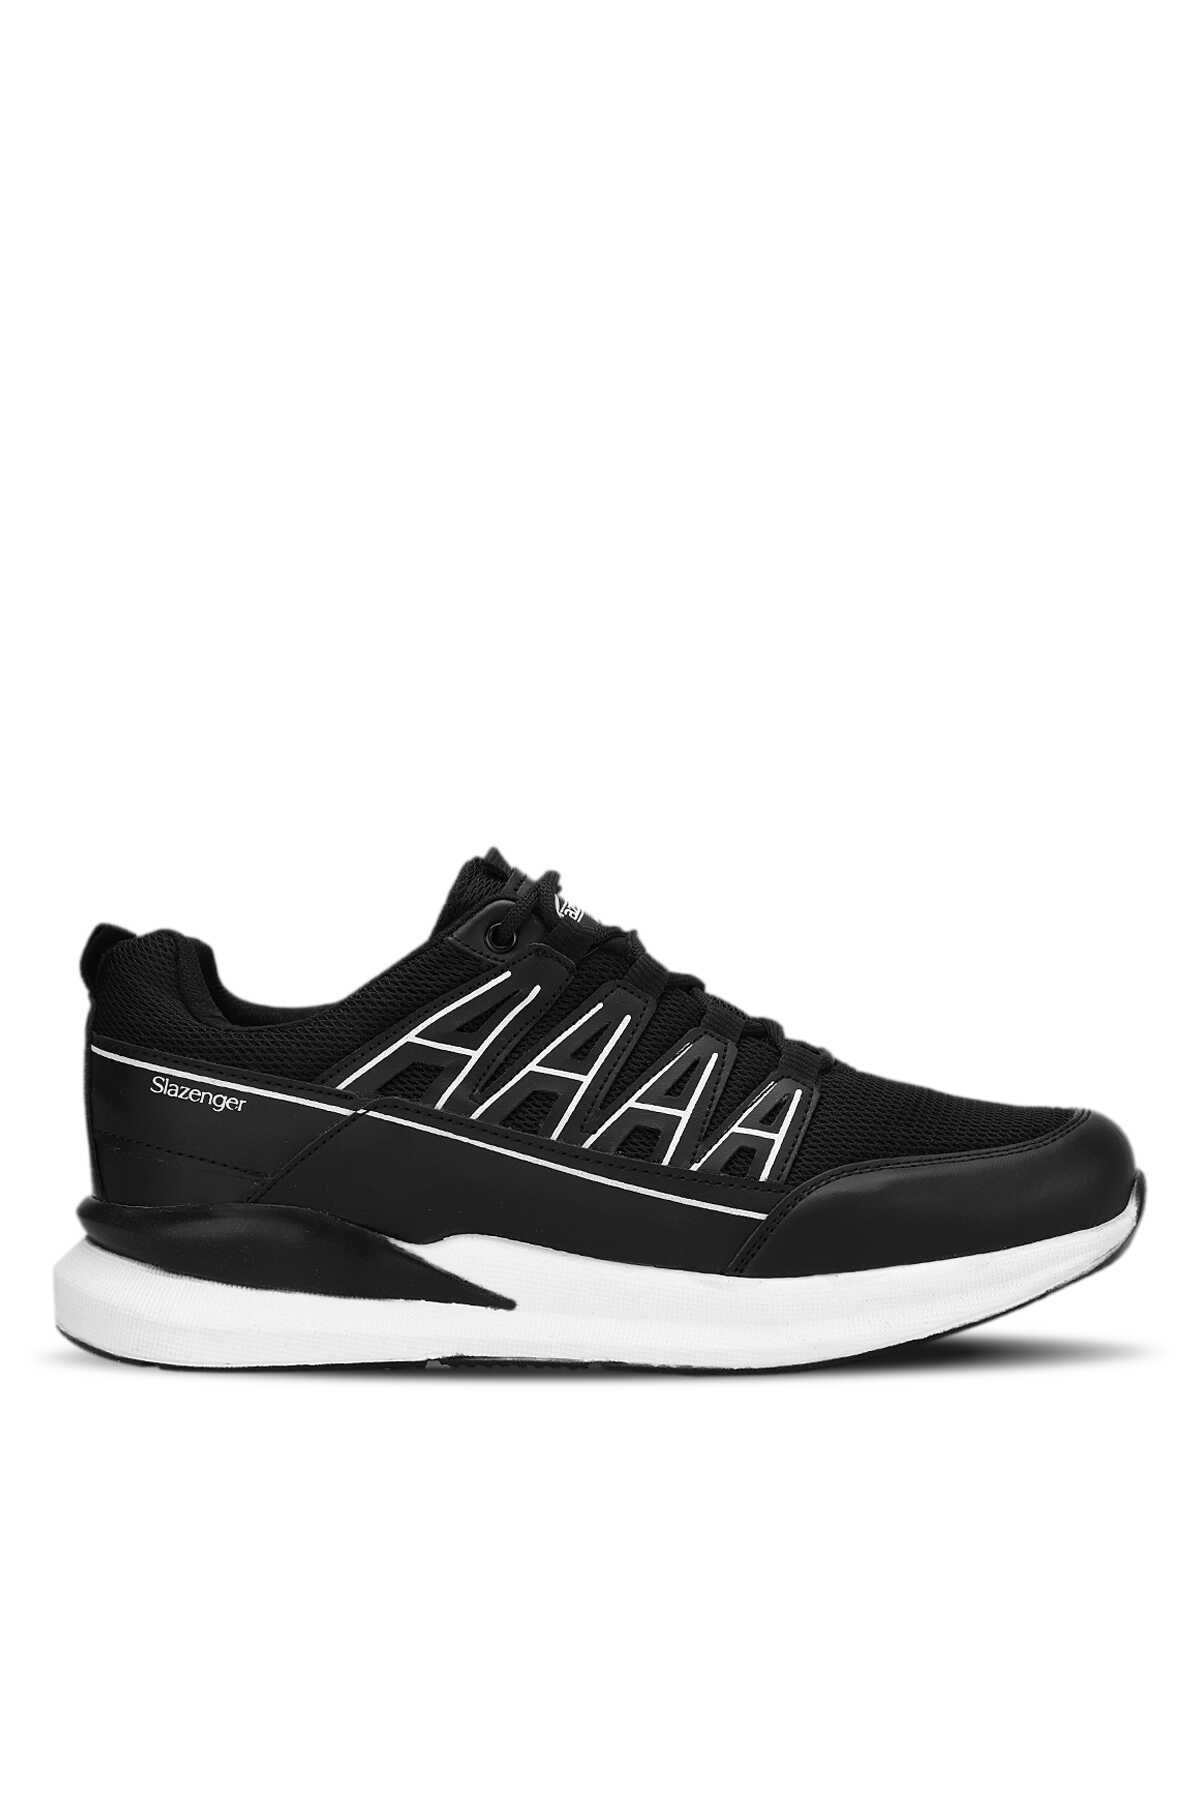 Slazenger - Slazenger KIERA I Sneaker Erkek Ayakkabı Siyah / Beyaz